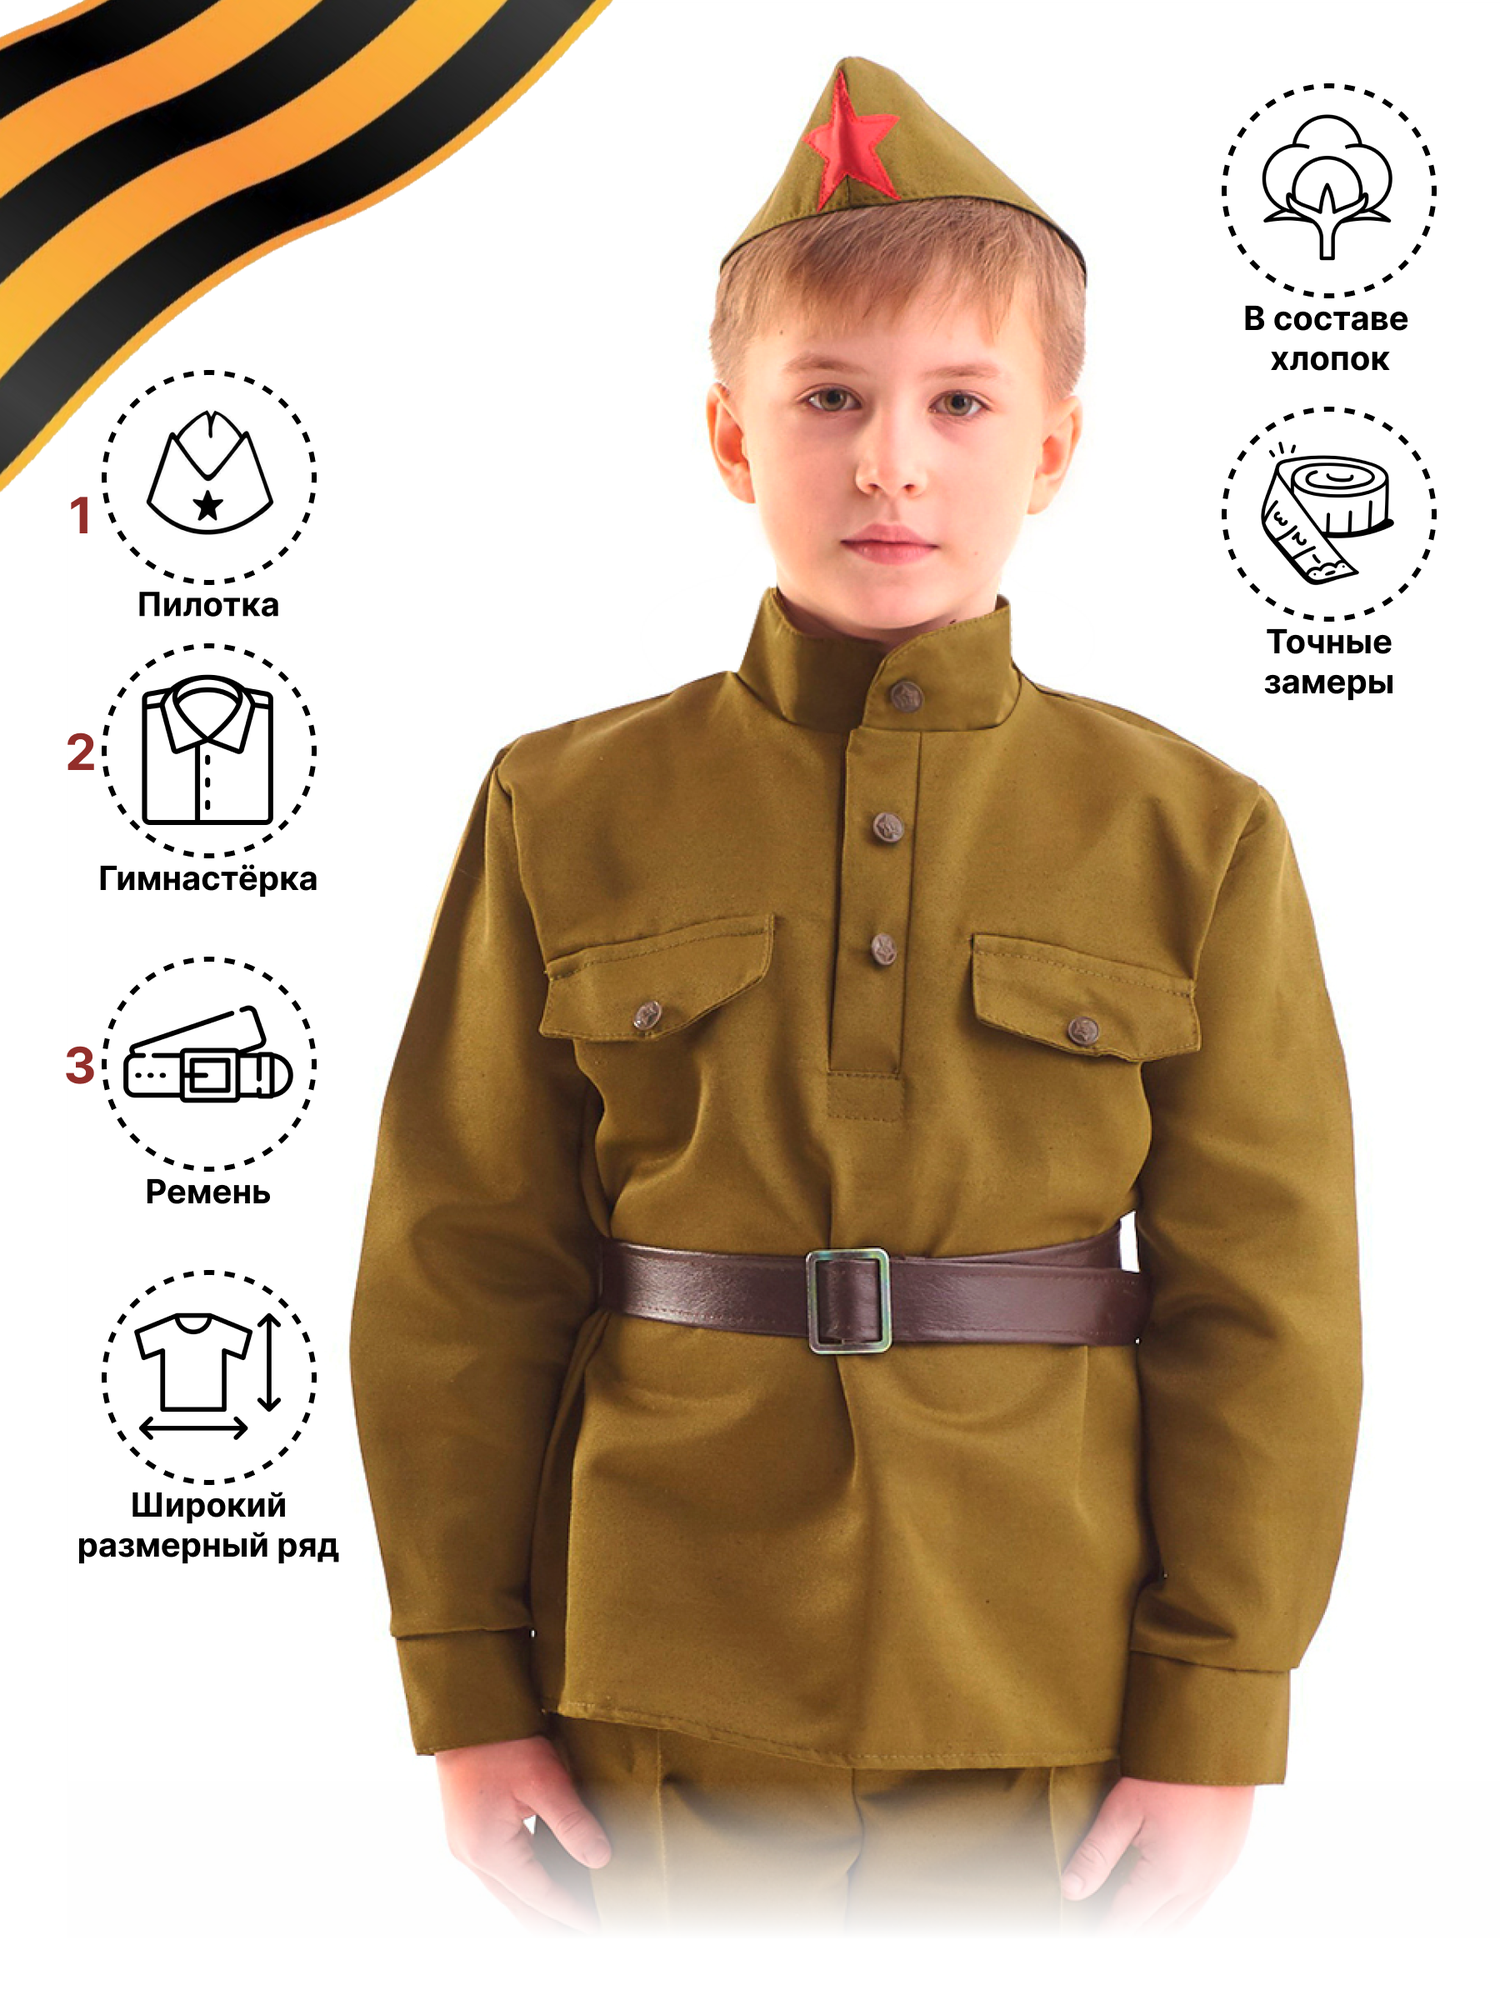 Карнавальный костюм "Бока" (Россия) для мальчика на 8 - 10 лет, рост 140 - 152 см, набор военного на парад 9 мая, 23 февраля, пилотка, гимнастерка, ремень, 2278